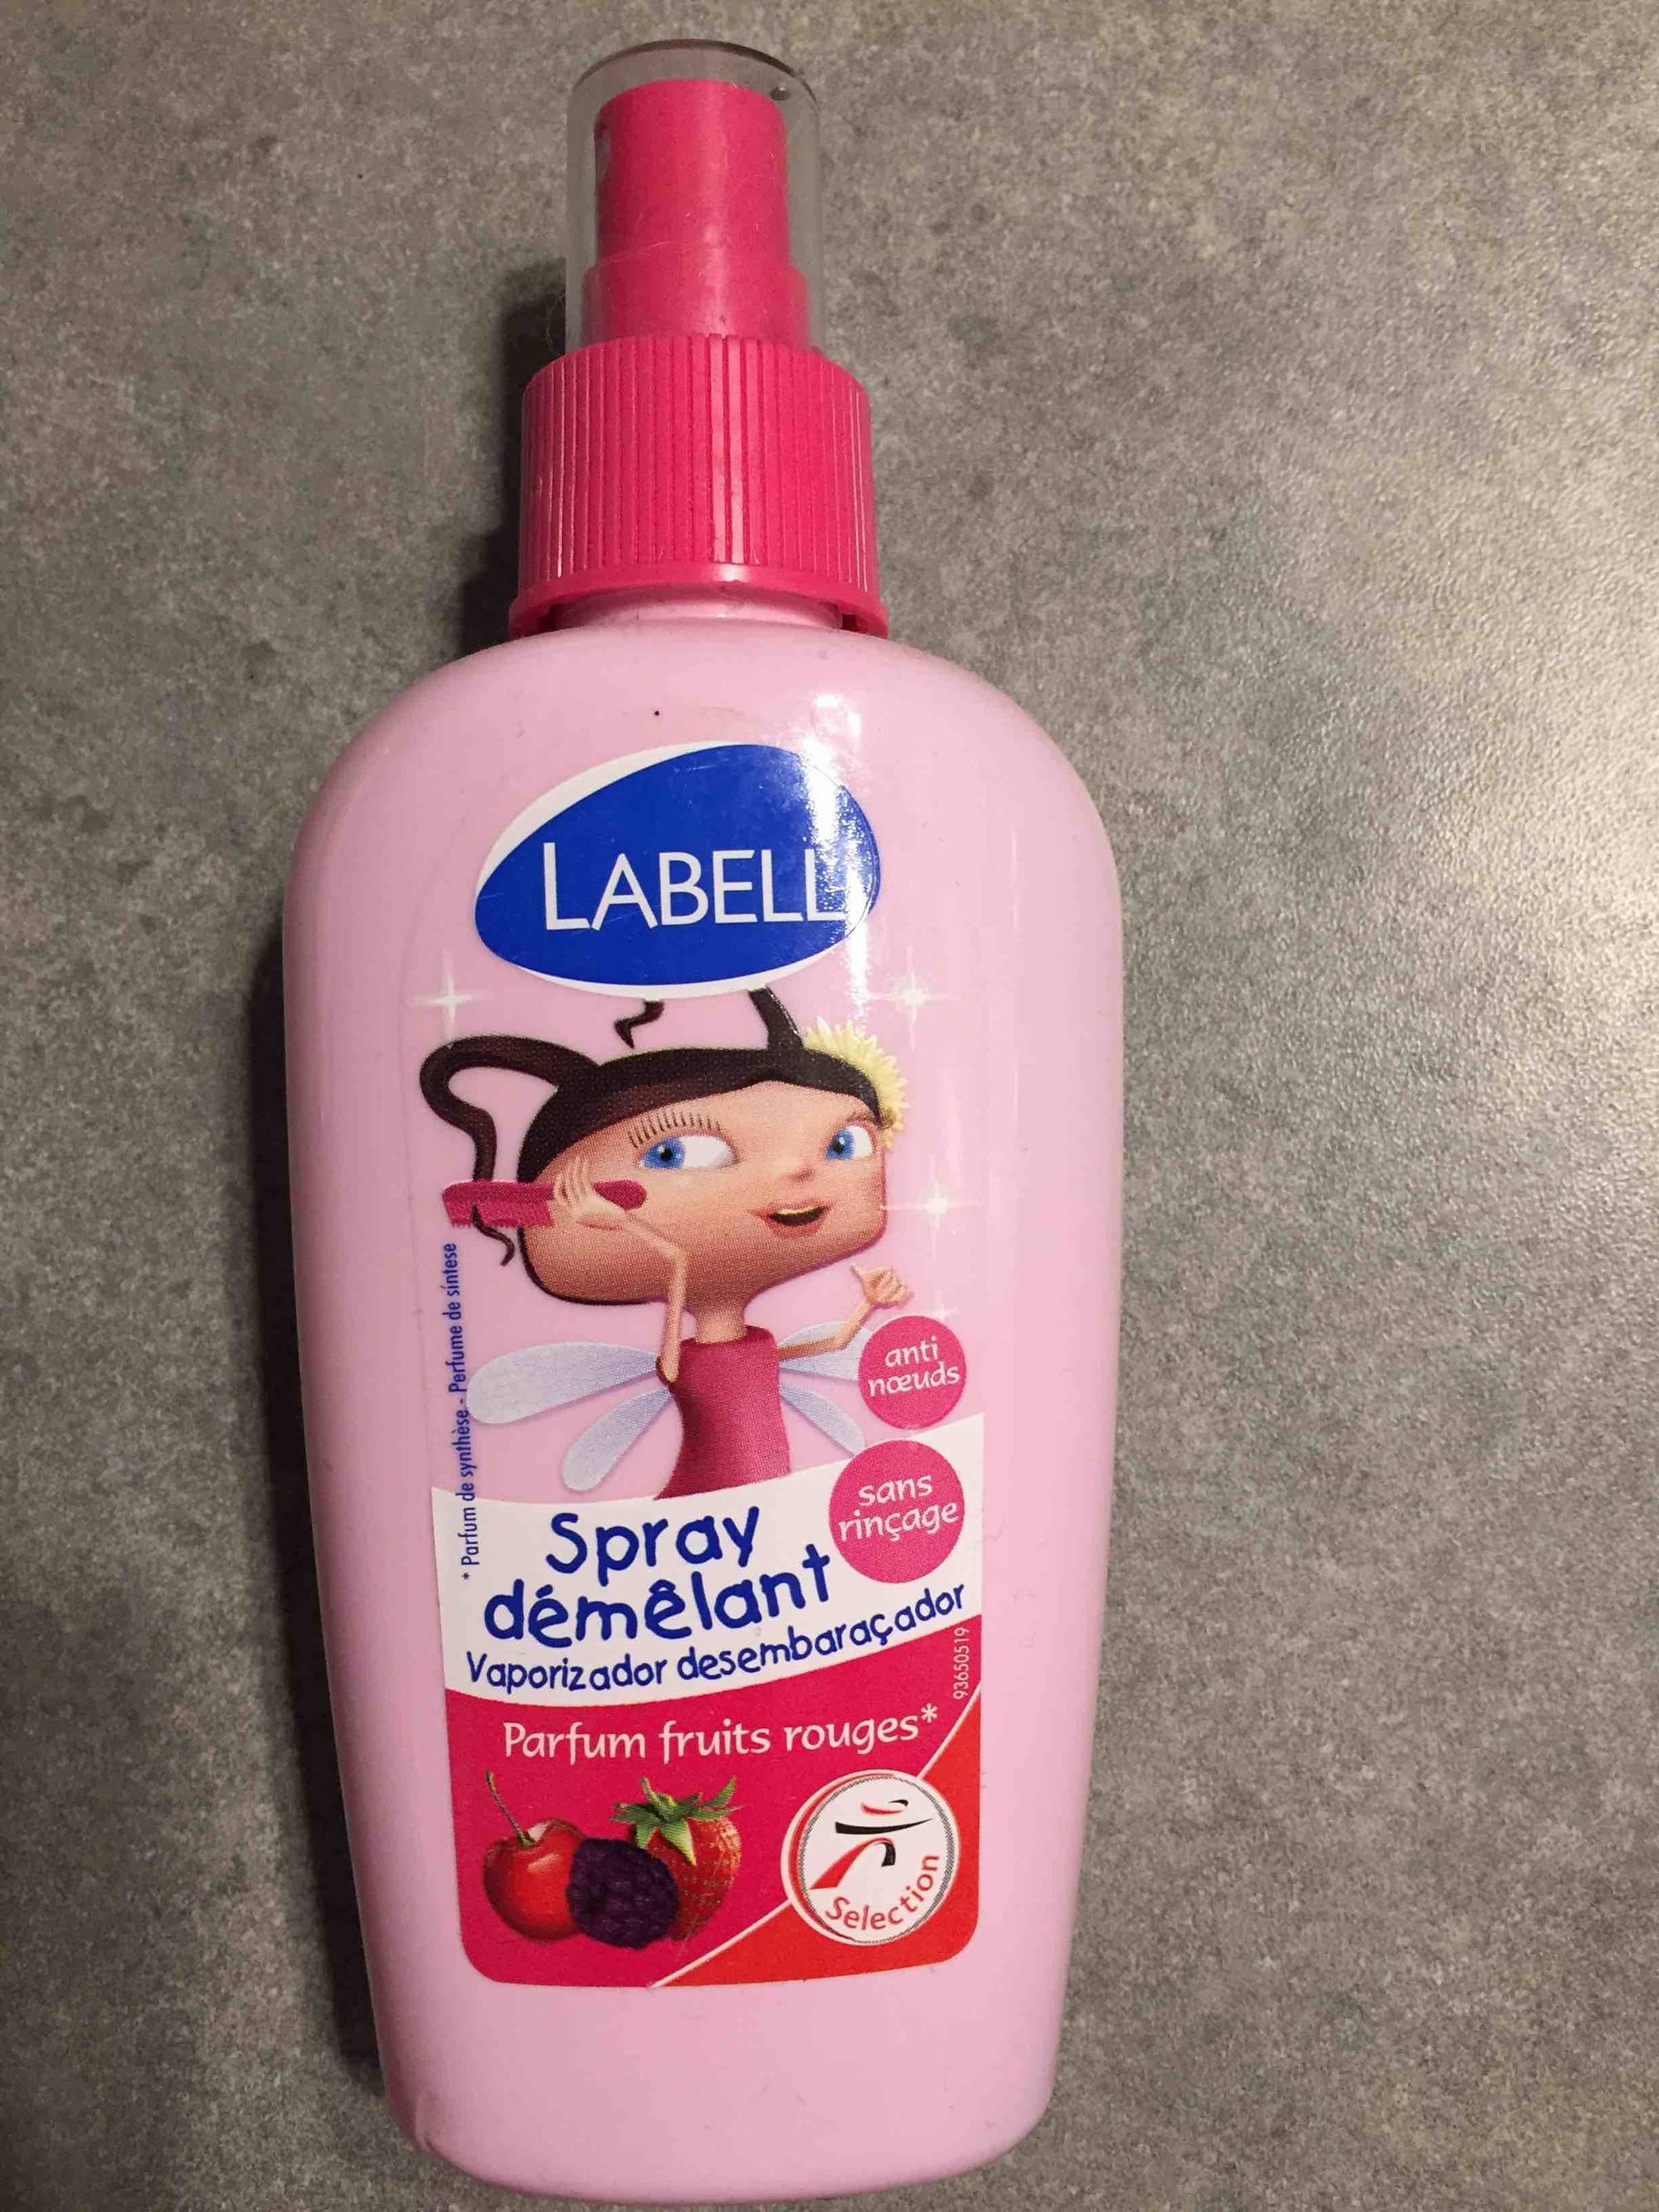 LABELL - Spray démêlant parfum fruits rouges